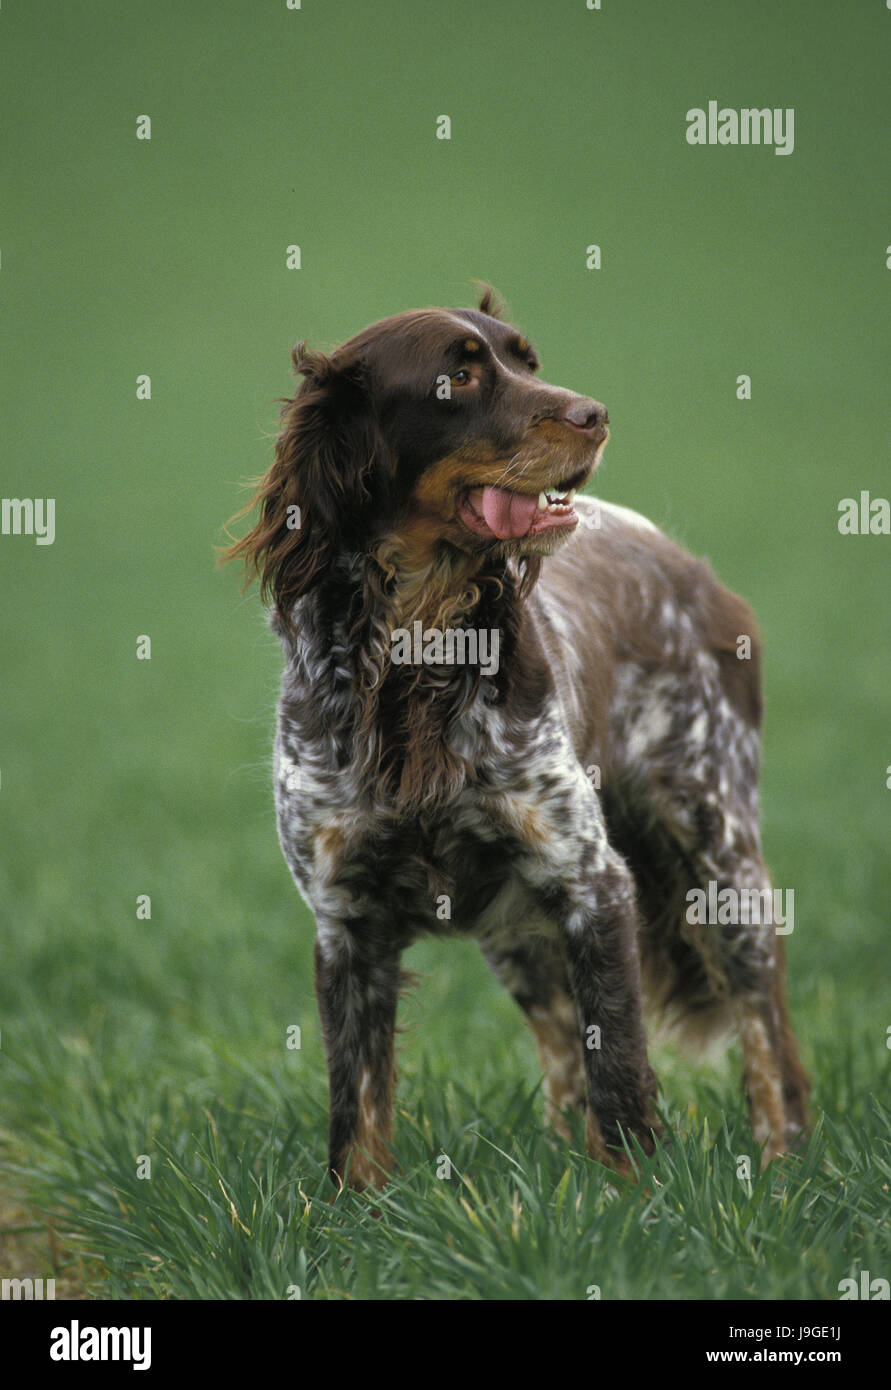 Picardy Spaniel Dog, Stock Photo